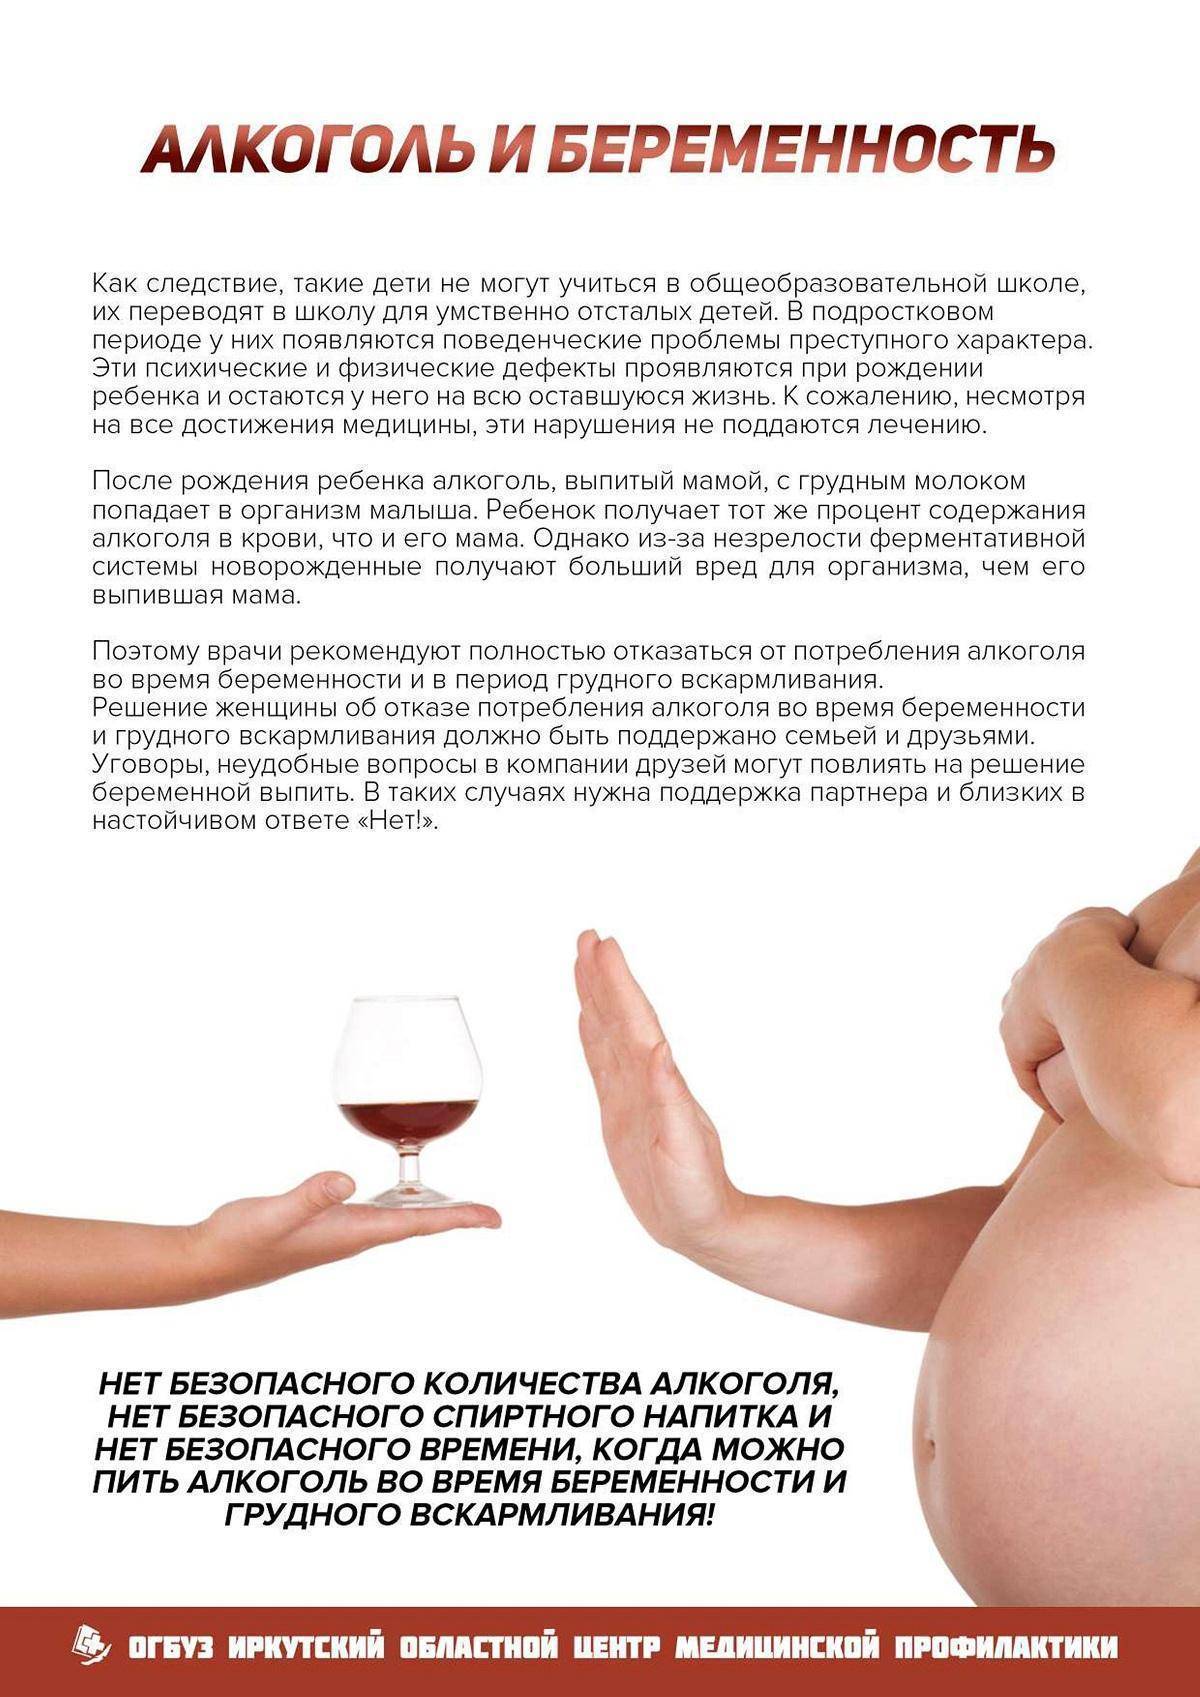 Пила в беременность форум. Алкоголь ибеременномть. Алкоголь и беременность памятка.